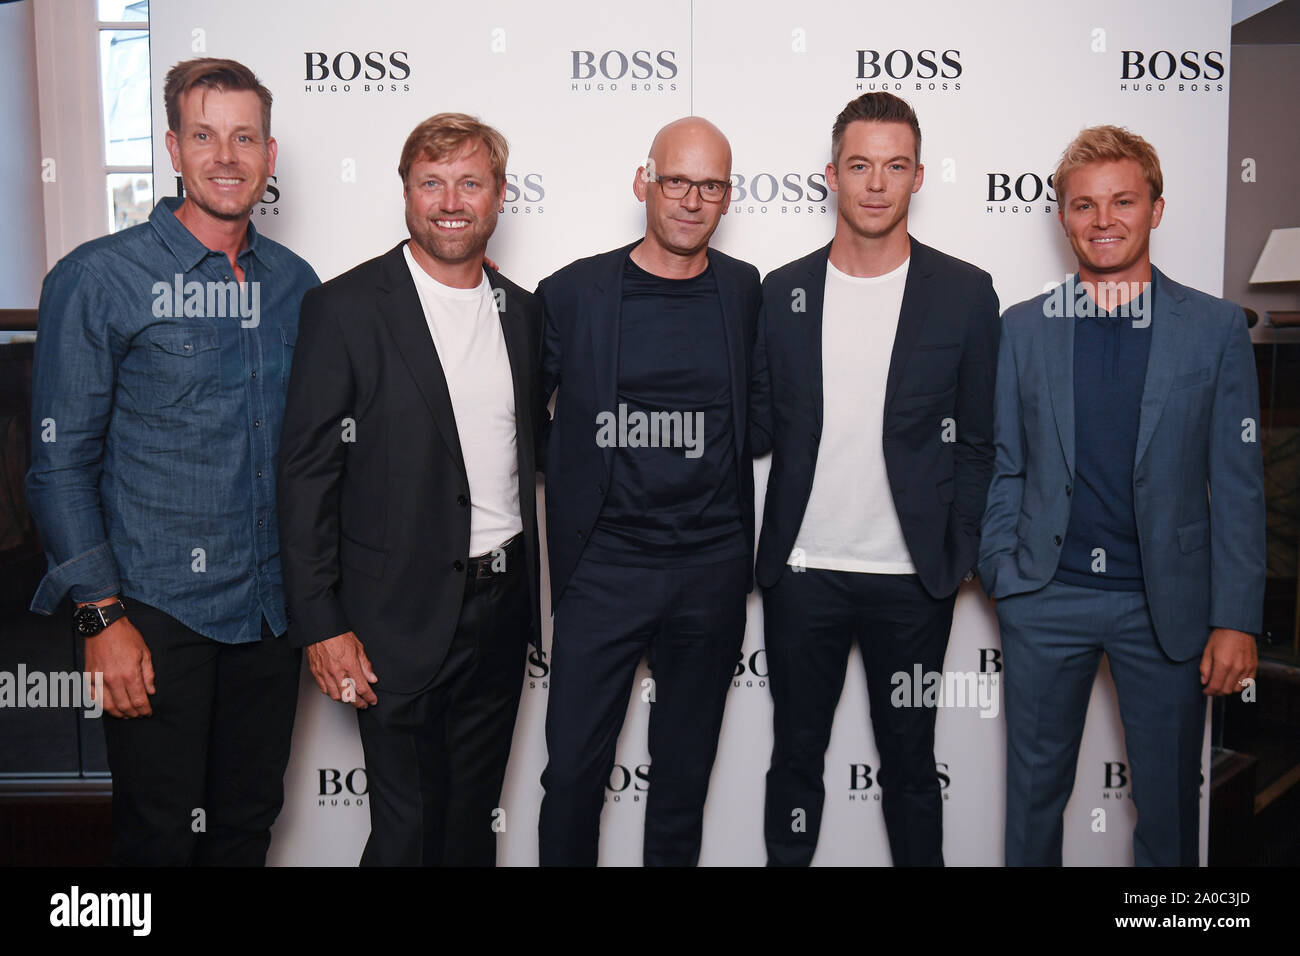 (De gauche à droite), Henrik Stenson Alex Thomson, Hugo Boss PDG Mark Langer, Andre Lotterer et Nico Rosberg à la cérémonie de baptême pour le yacht Hugo Boss à Londres. Banque D'Images